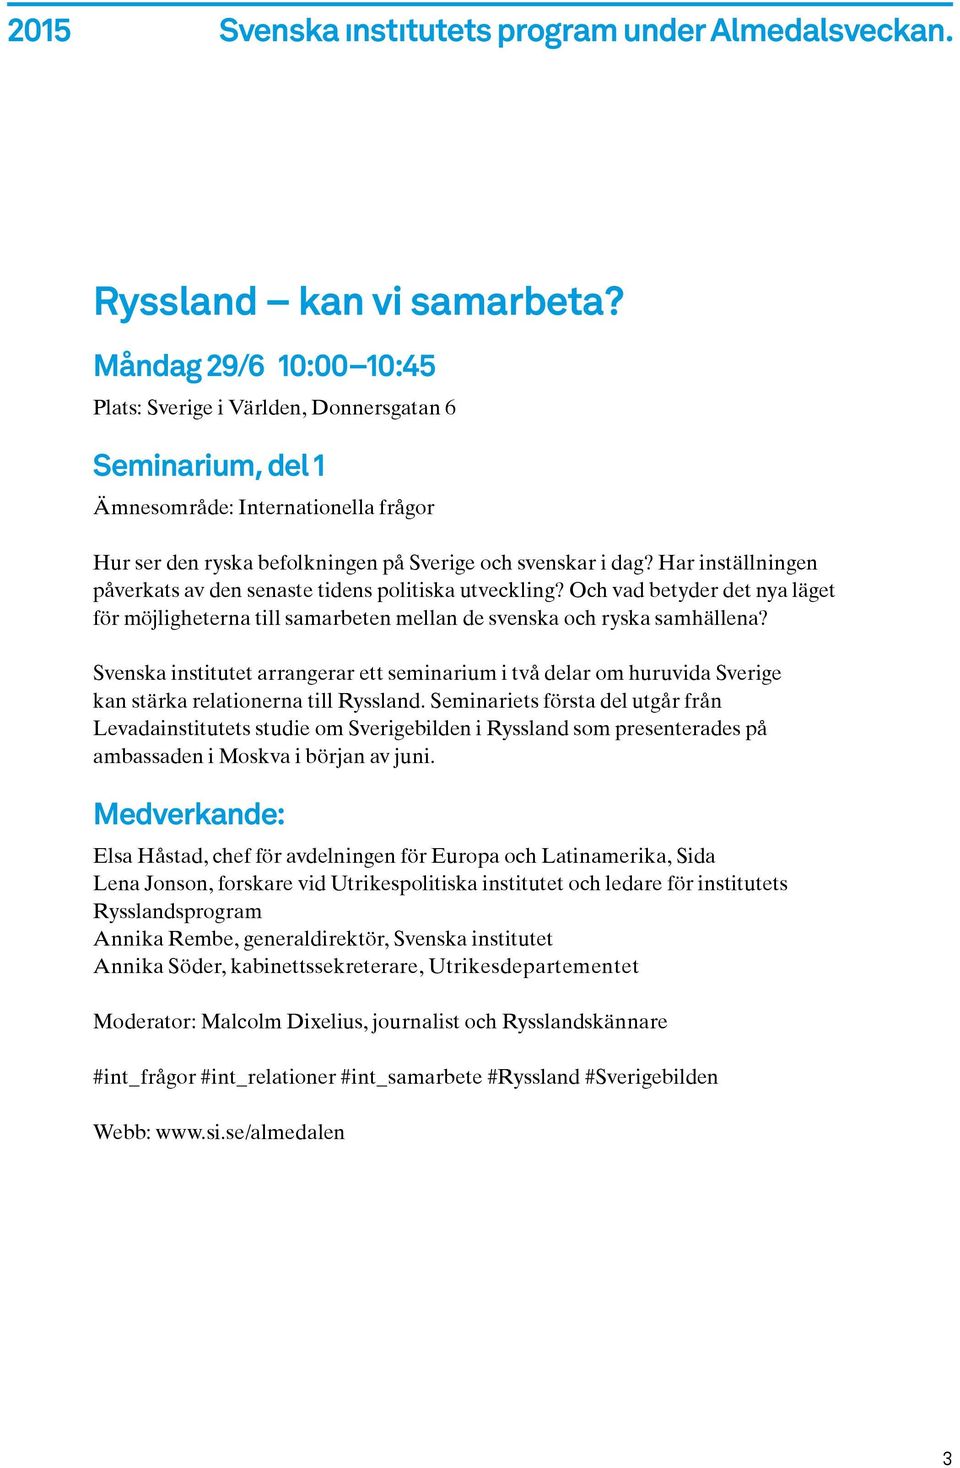 Svenska institutet arrangerar ett seminarium i två delar om huruvida Sverige kan stärka relationerna till Ryssland.